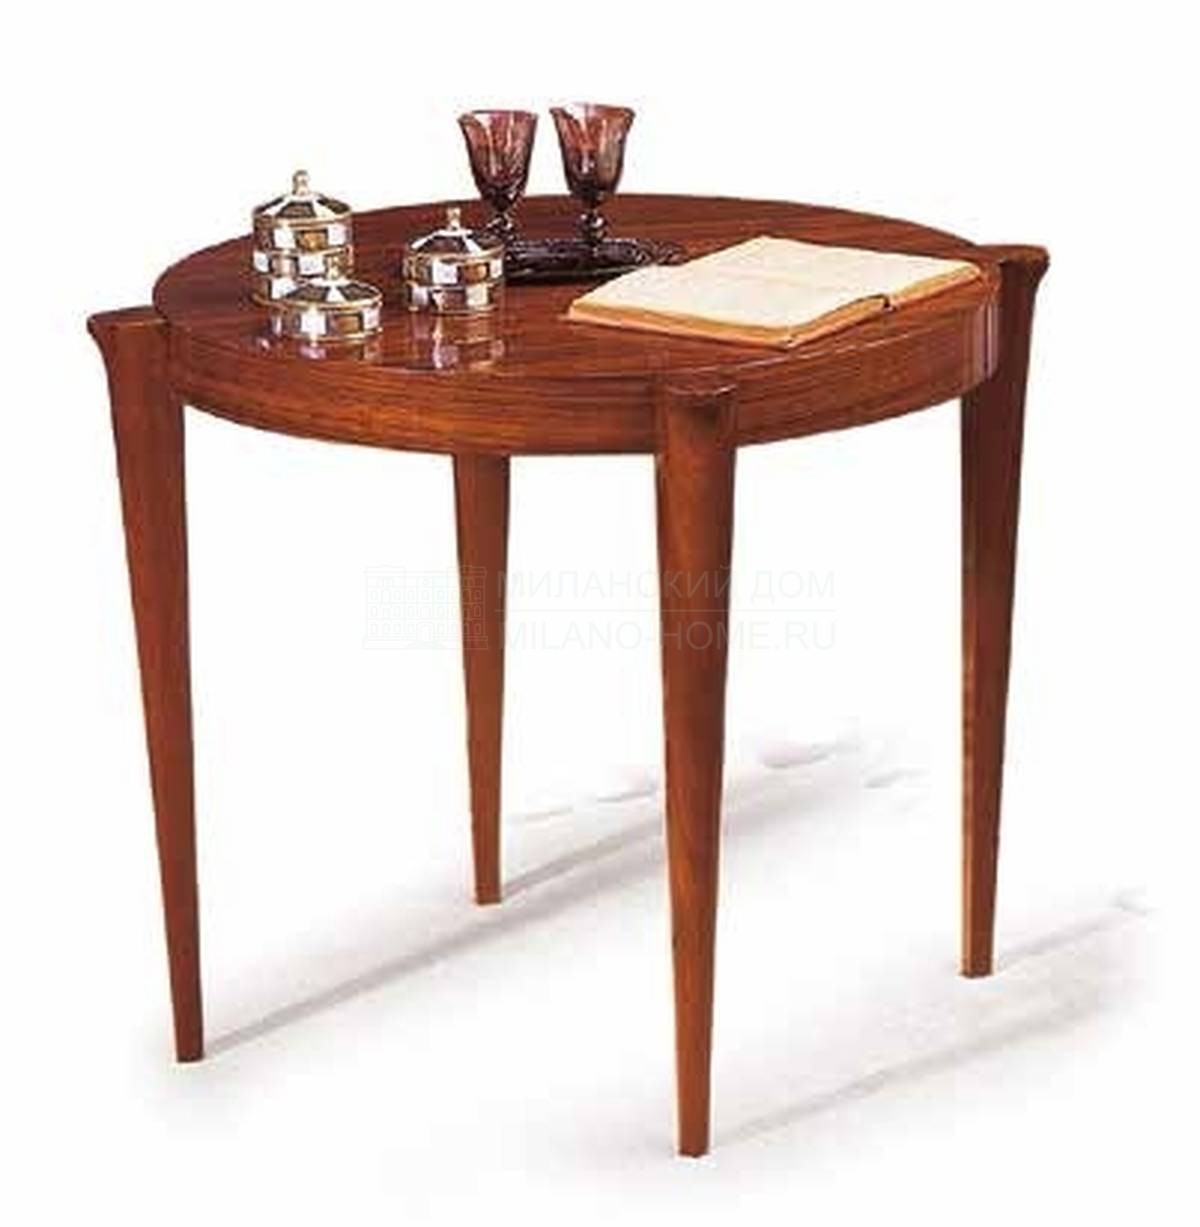 Кофейный столик Art Deco/311-10 из Испании фабрики PICO MUEBLES